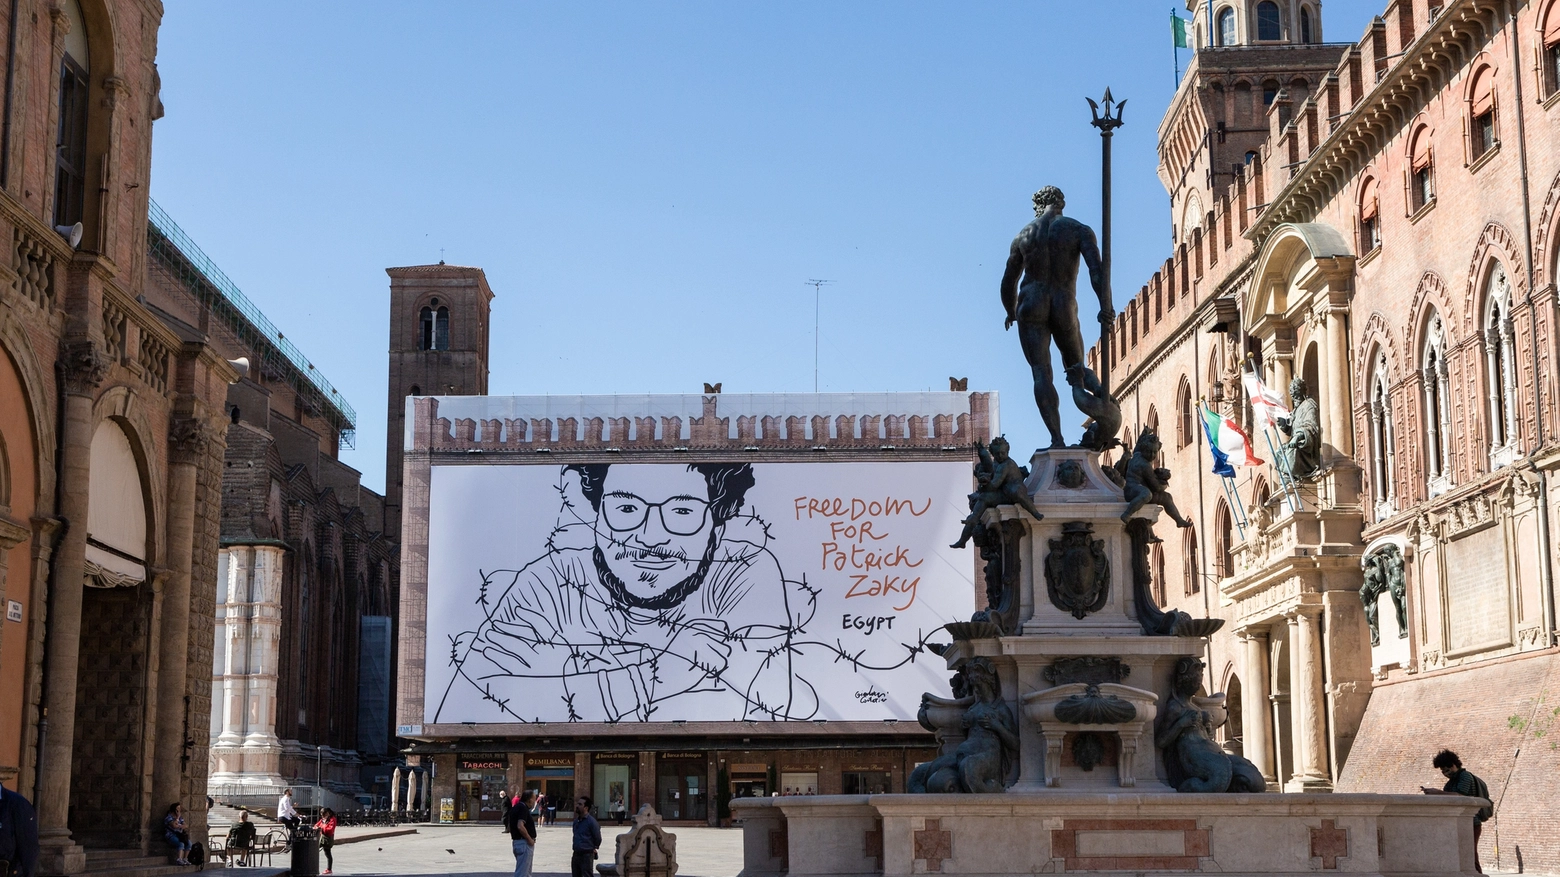 La gigantografia per Patrick Zaki  in piazza Maggiore